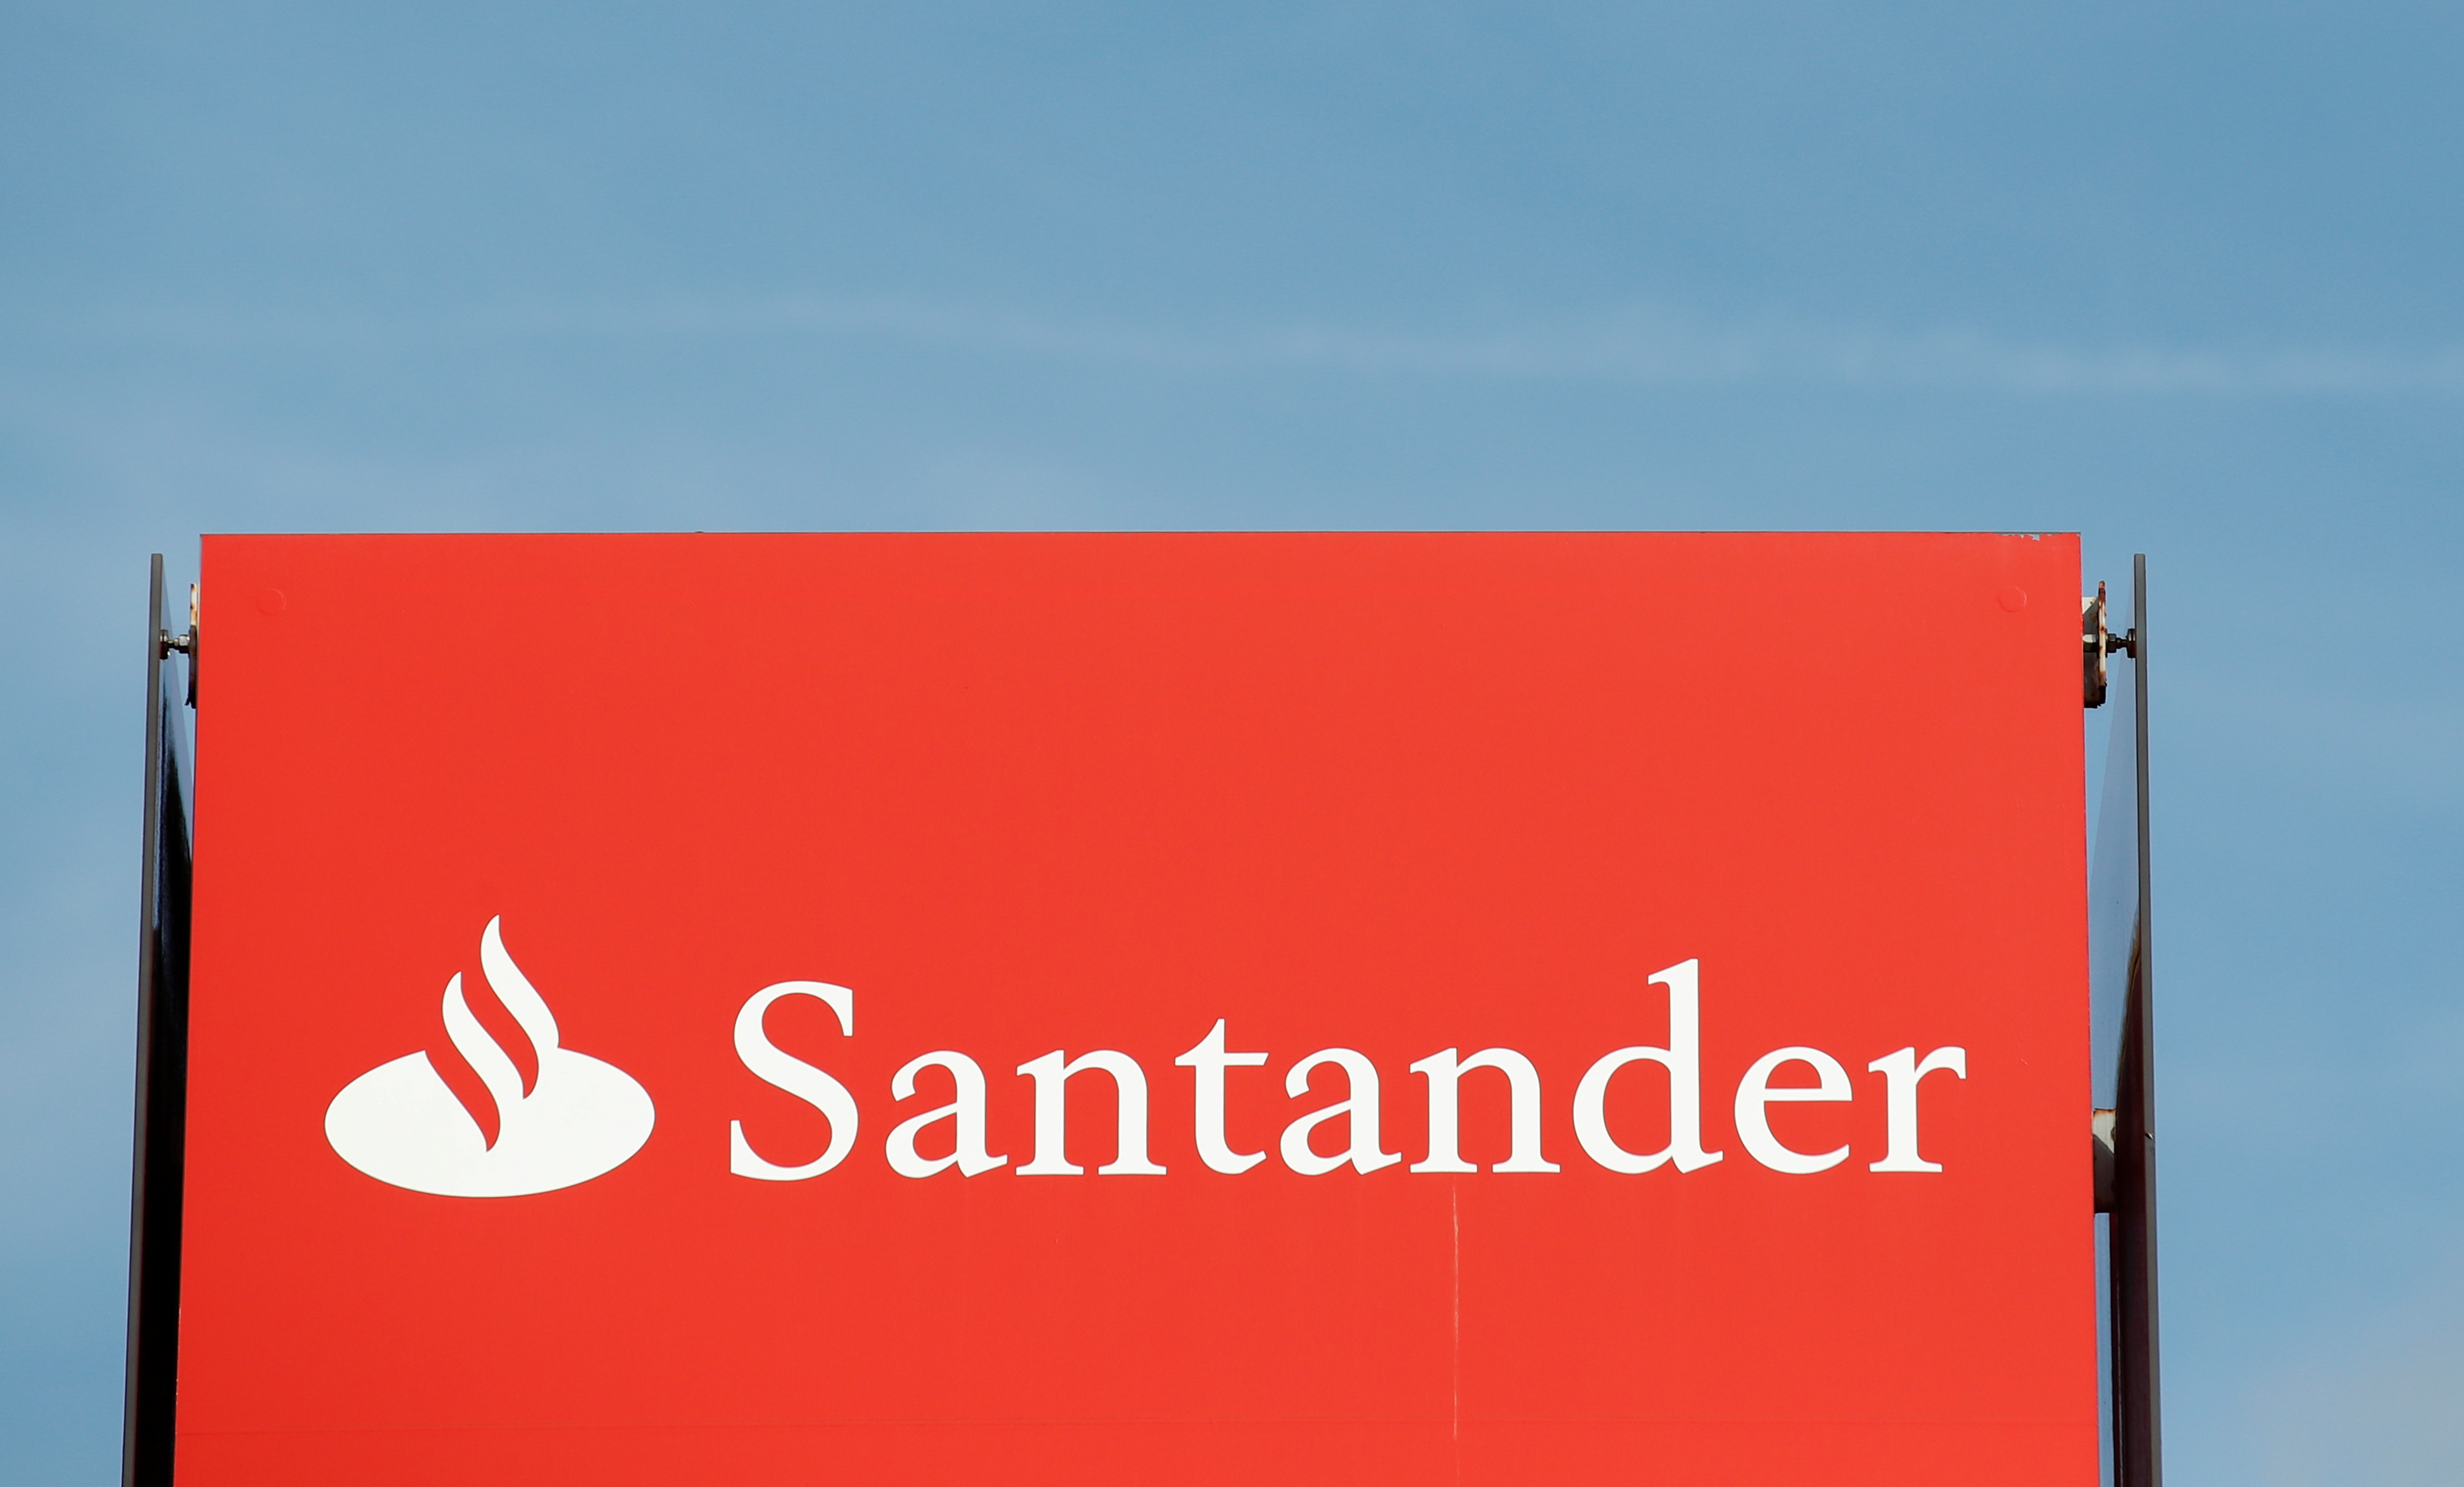 Santander hilft britischen Mitarbeitern, während die Inflation hart beißt